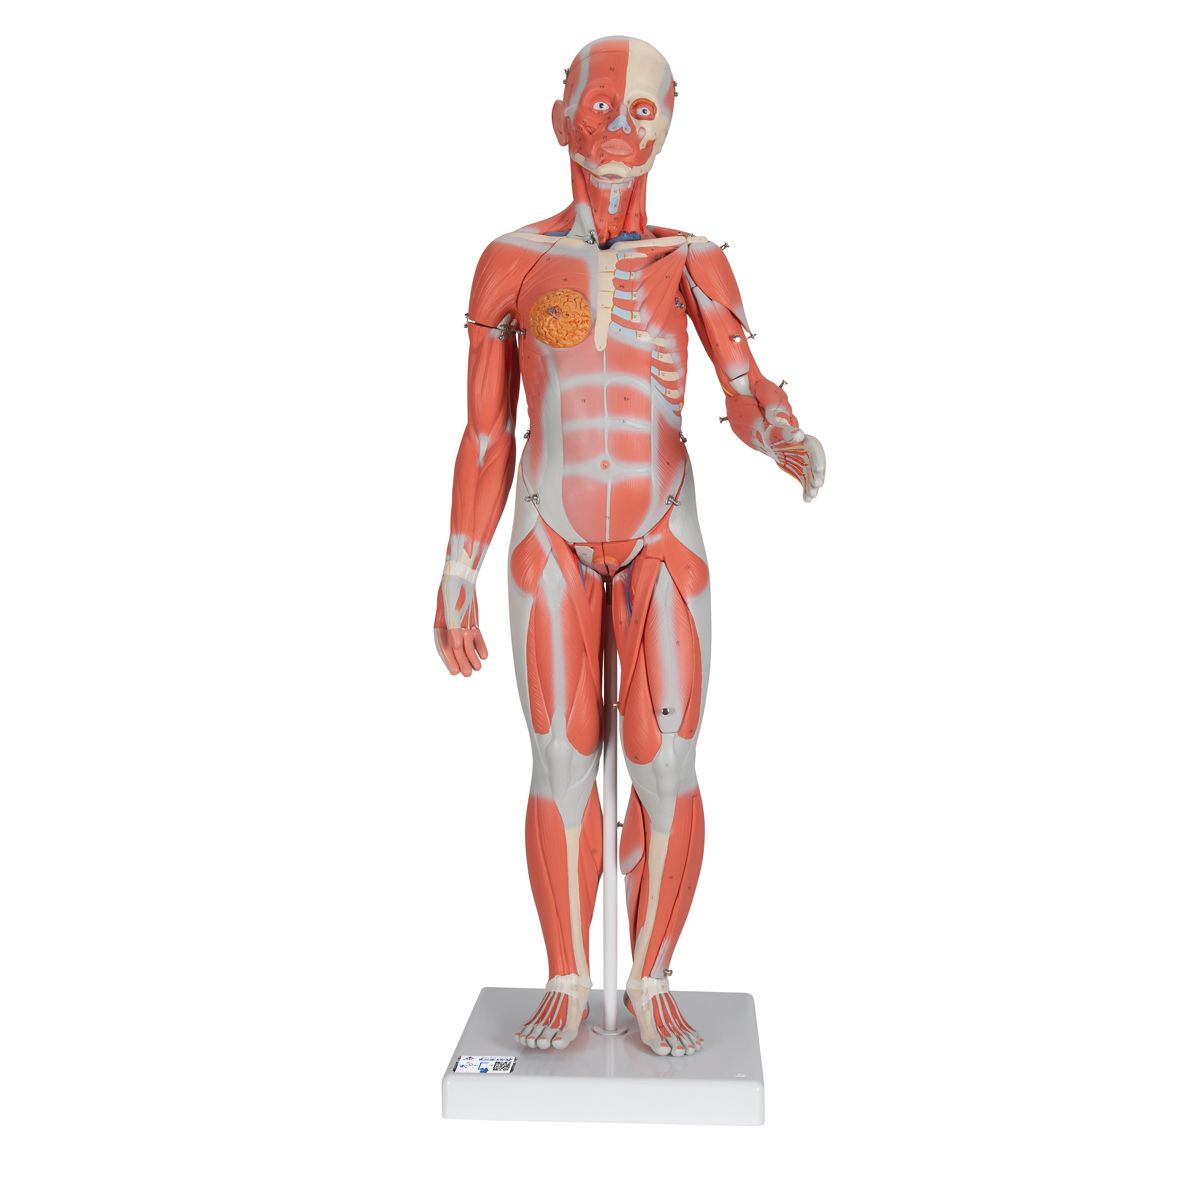 Muskelfigur, zweigeschlechtig mit inneren Organen, 33-teilig, Bestellnummer 1000210, B55, 3B Scientific